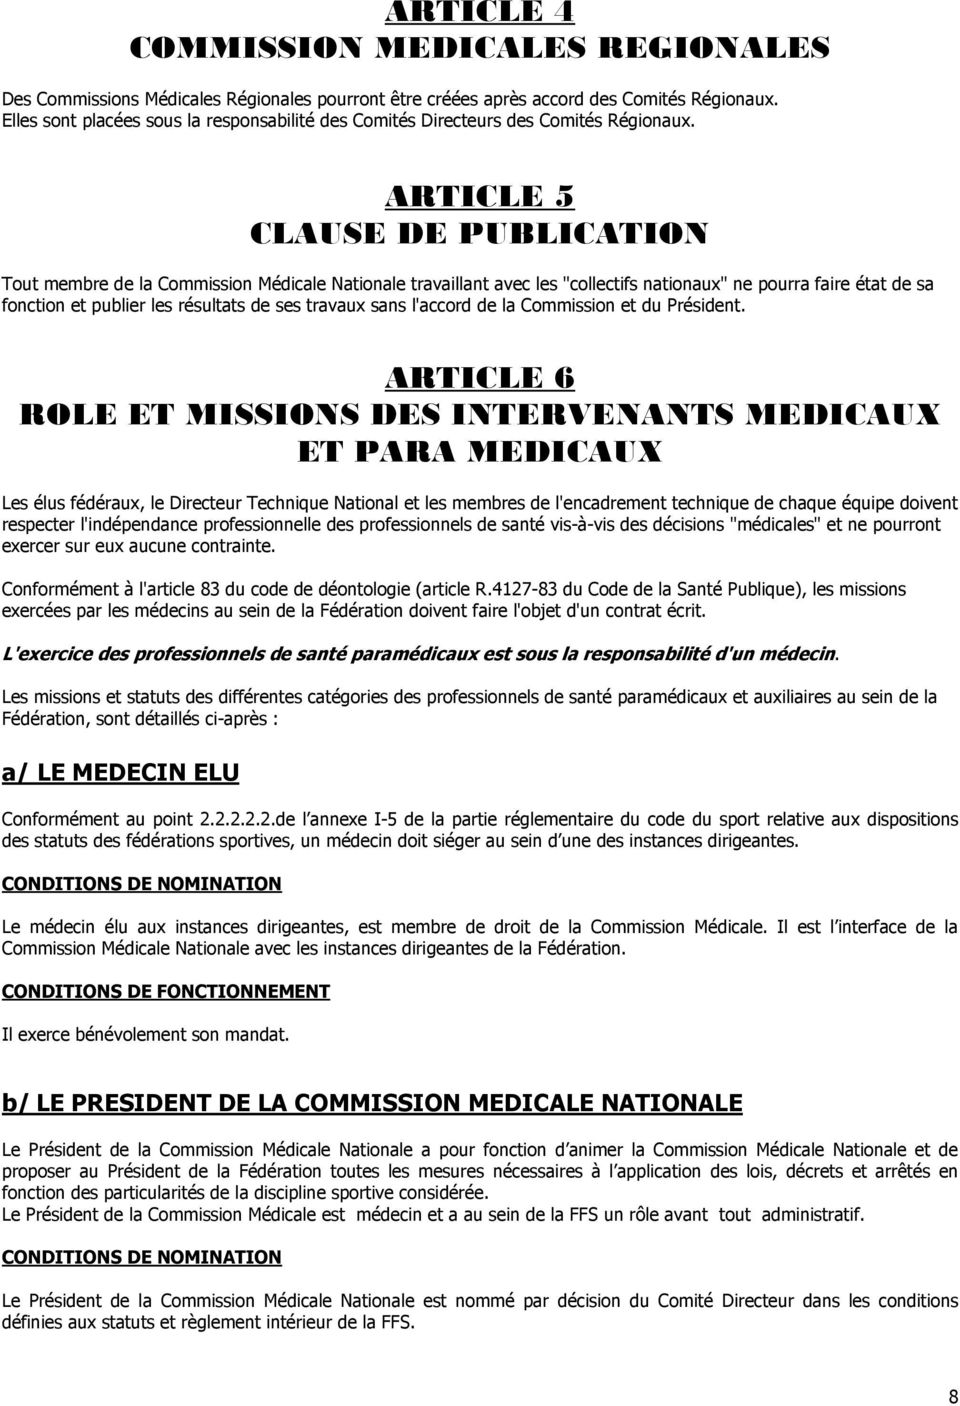 ARTICLE 5 CLAUSE DE PUBLICATION Tout membre de la Commission Médicale Nationale travaillant avec les "collectifs nationaux" ne pourra faire état de sa fonction et publier les résultats de ses travaux